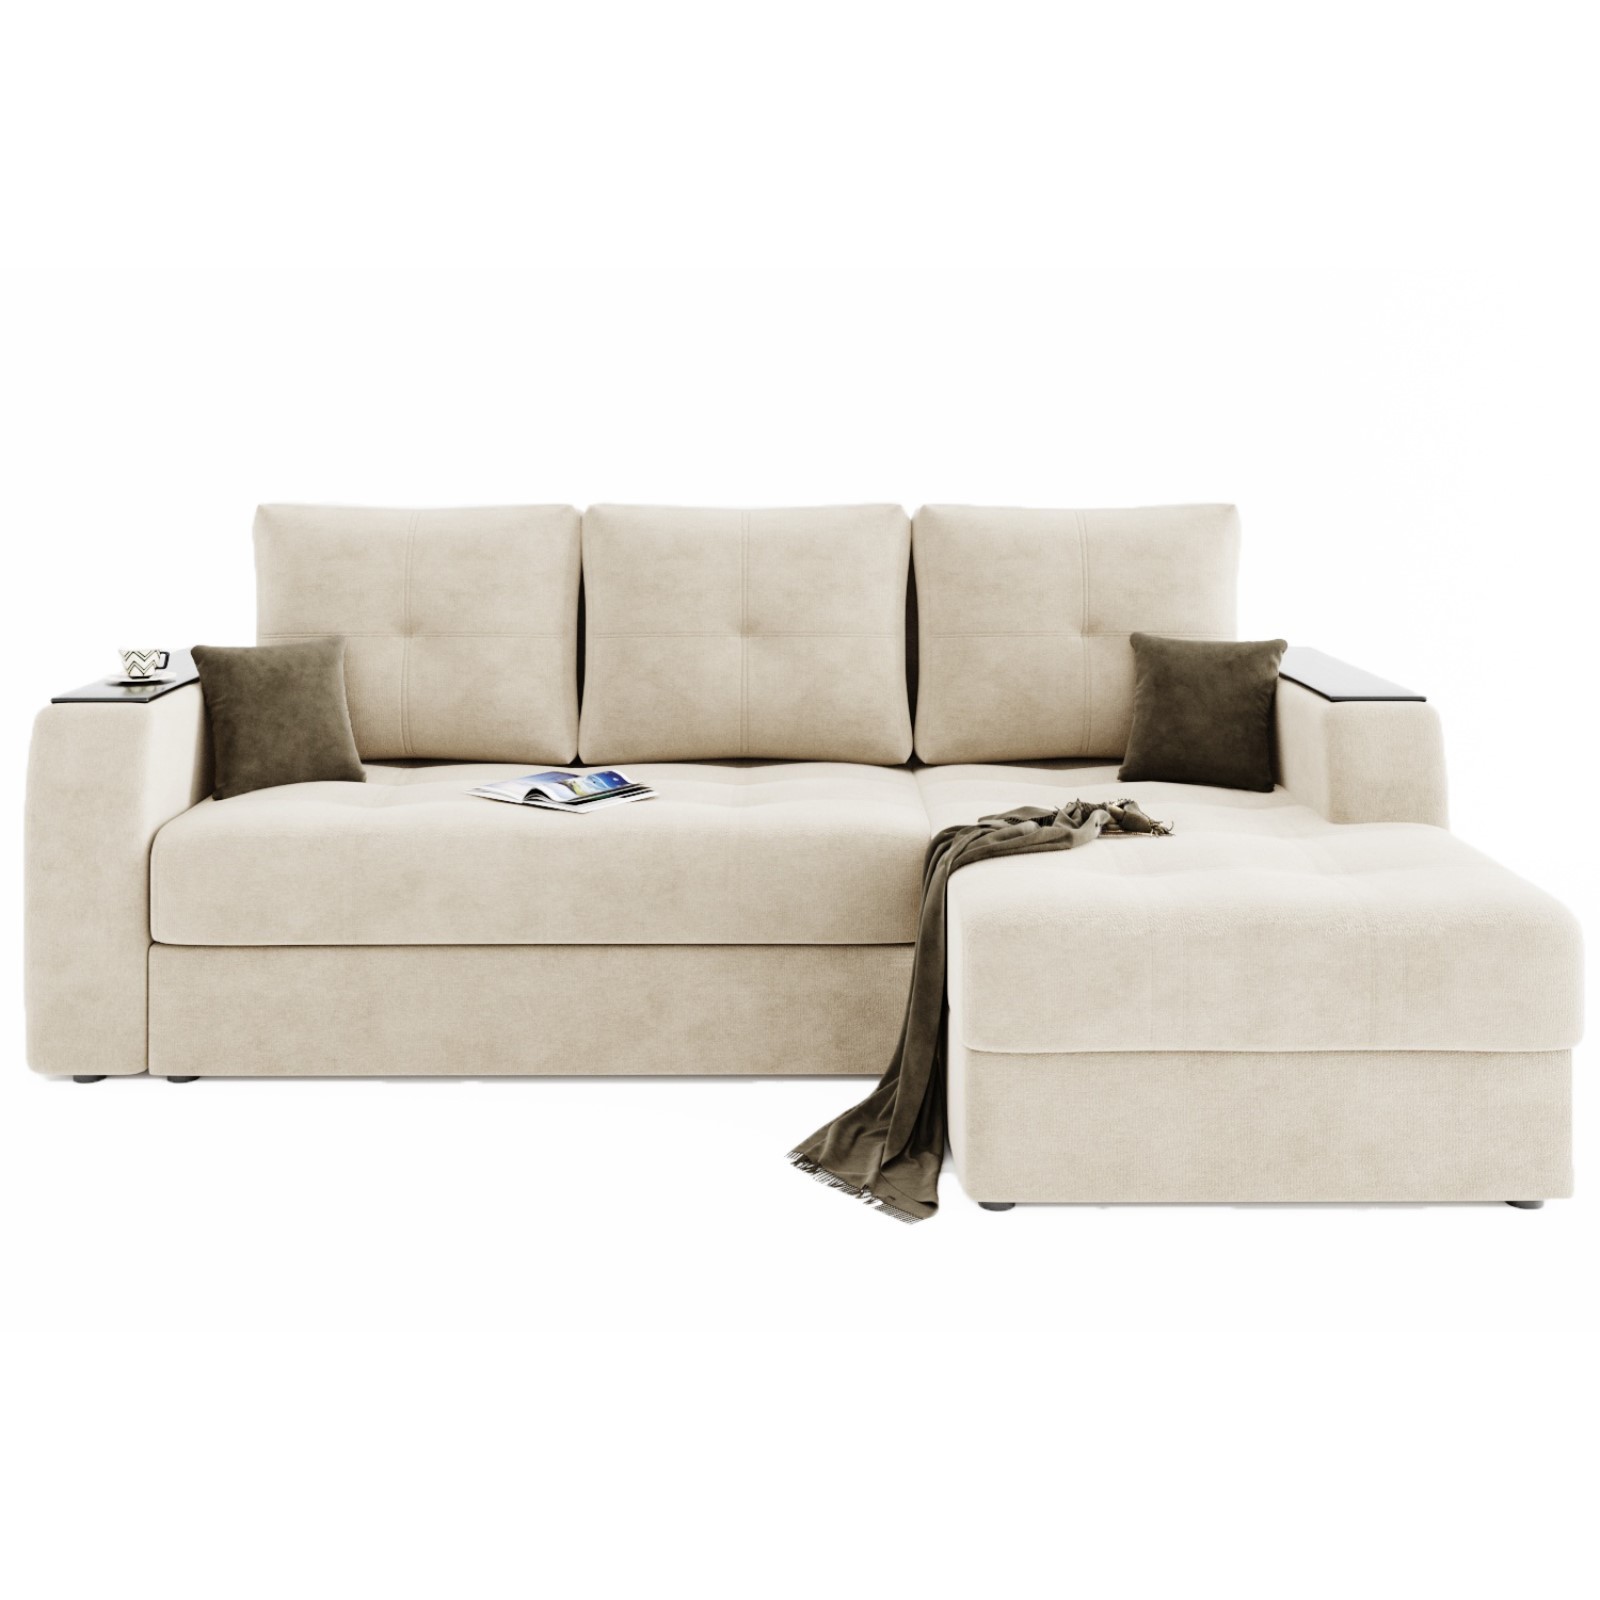 Угловой диван «Сенатор 3», механизм пантограф, угол правый, велюр, селфи 01/ селфи 03 (7908158) - Купить по цене от 66 650.00 руб.